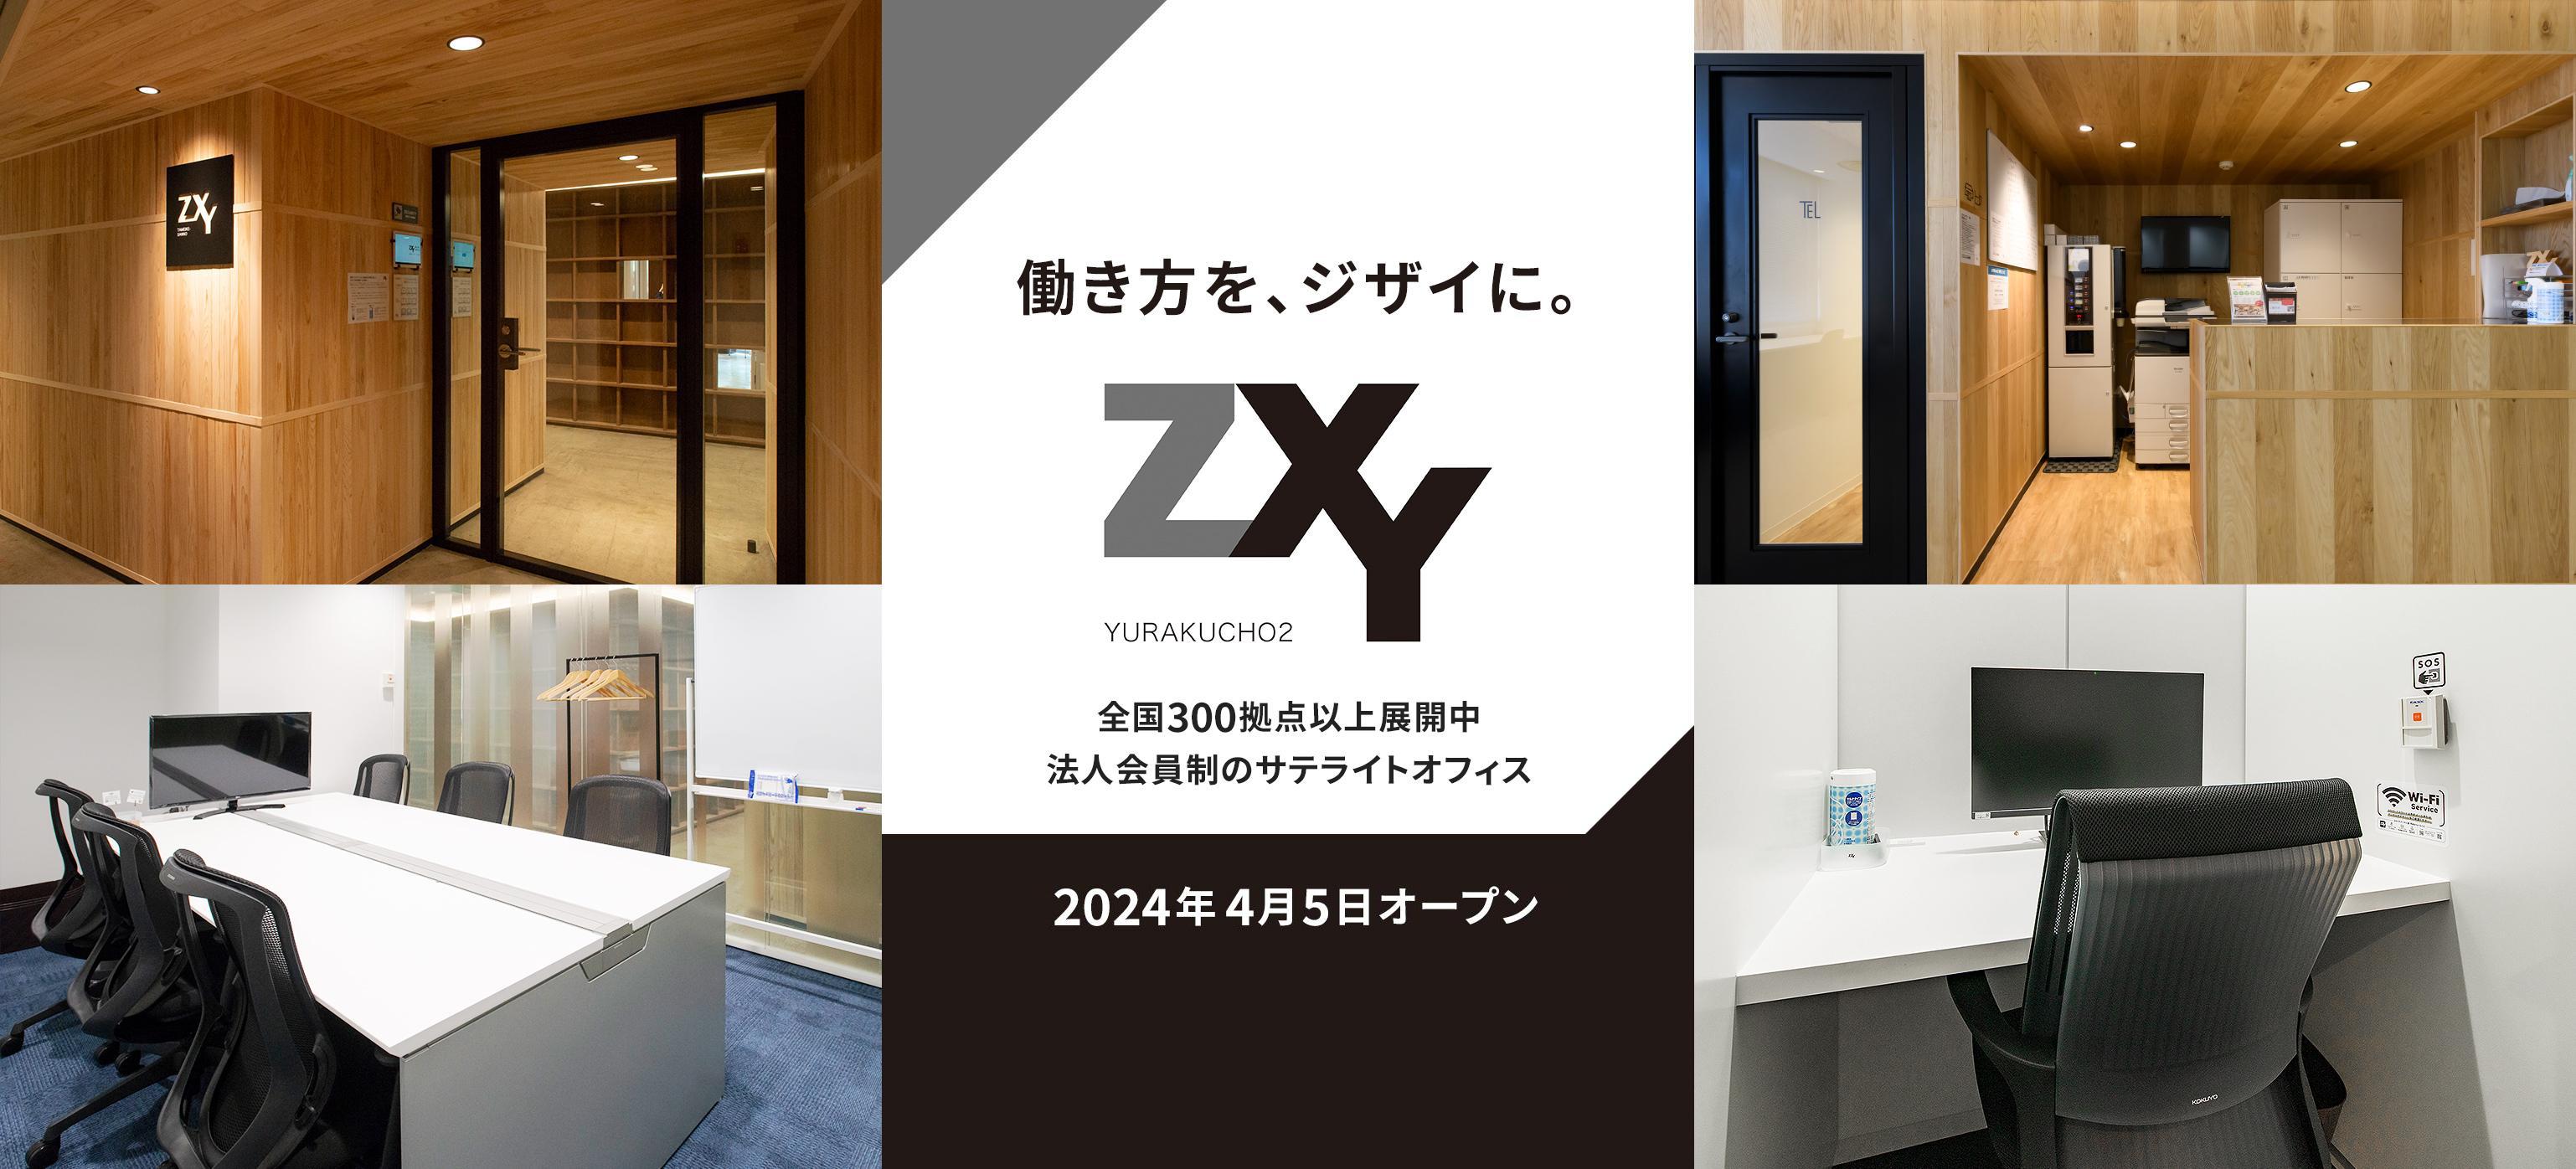 働き方を、ジザイに。全国300拠点以上展開中 法人会員制のサテライトオフィス「ZXY」2024年4月5日オープン